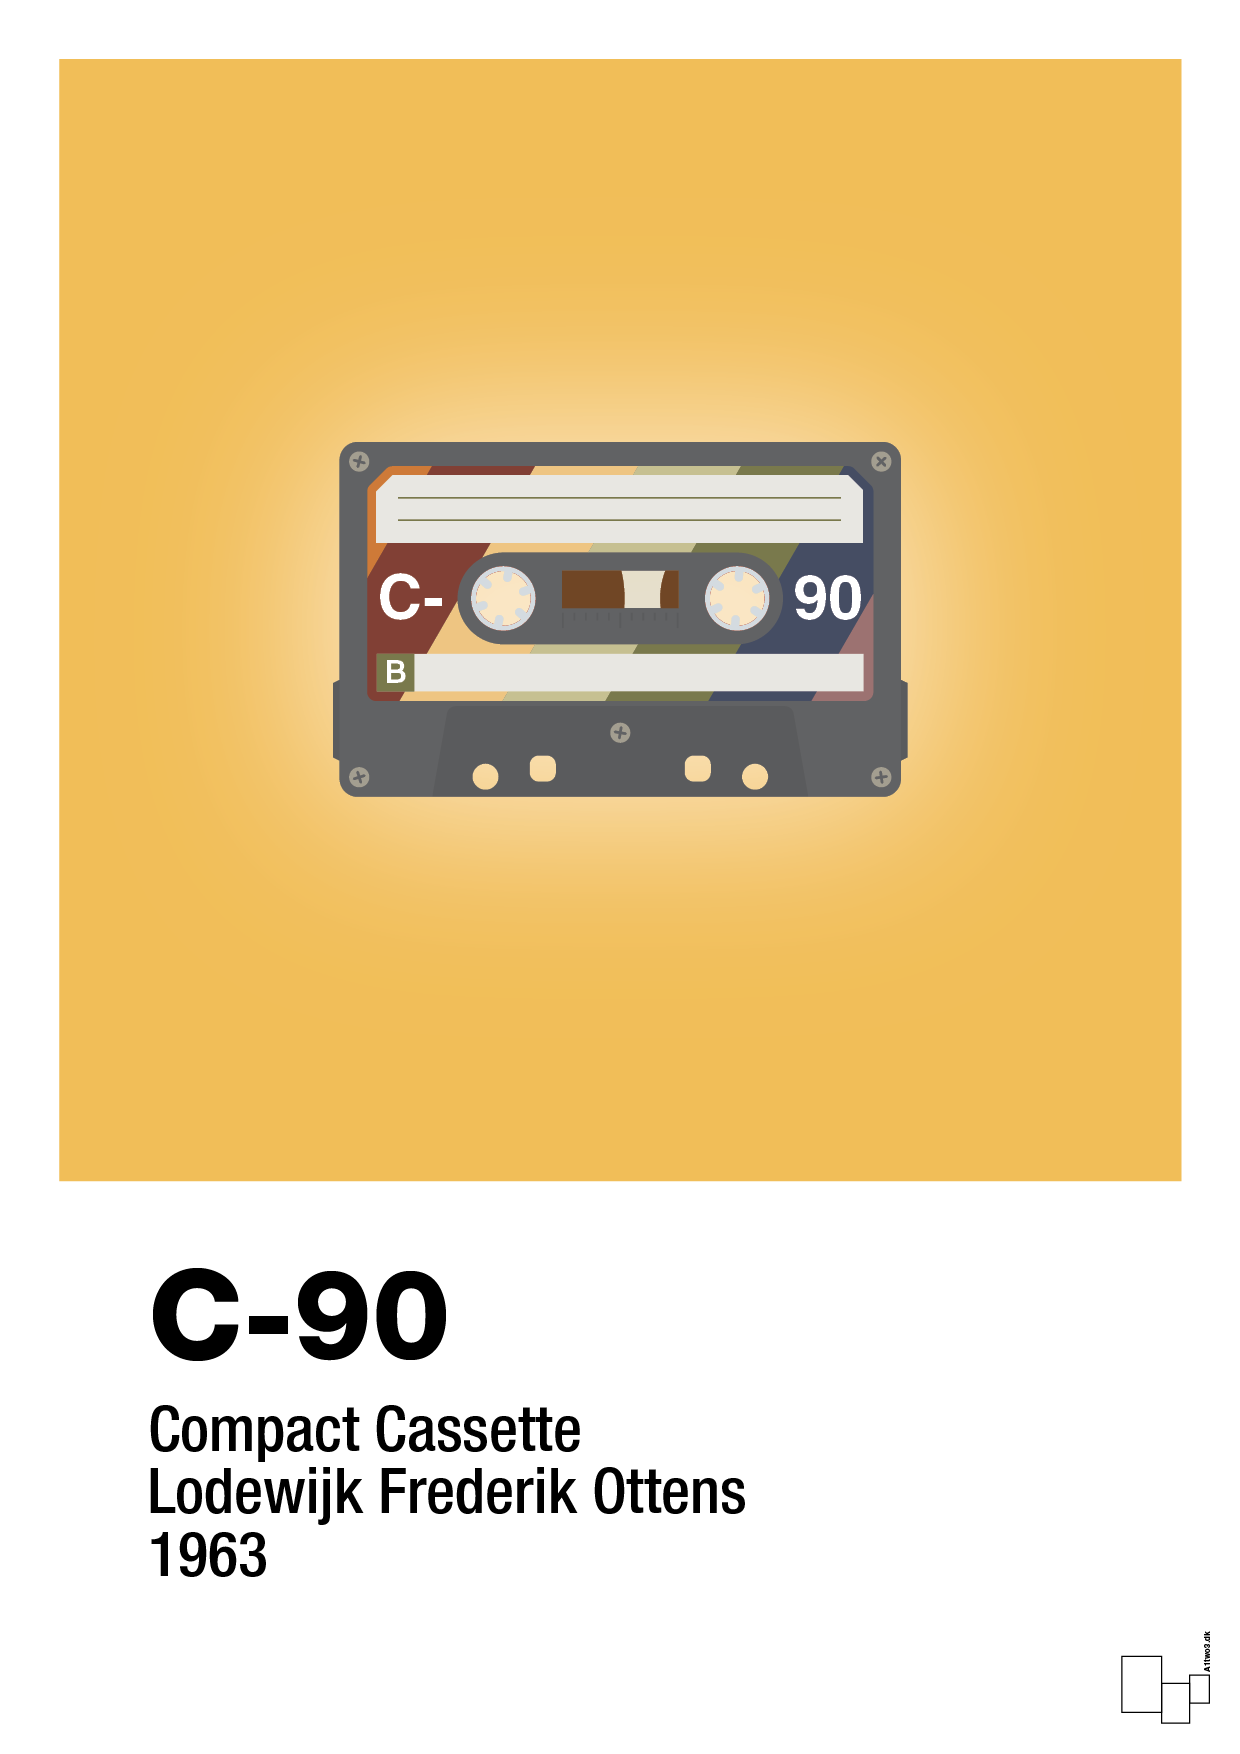 kassettebånd c-90 - Plakat med Grafik i Honeycomb